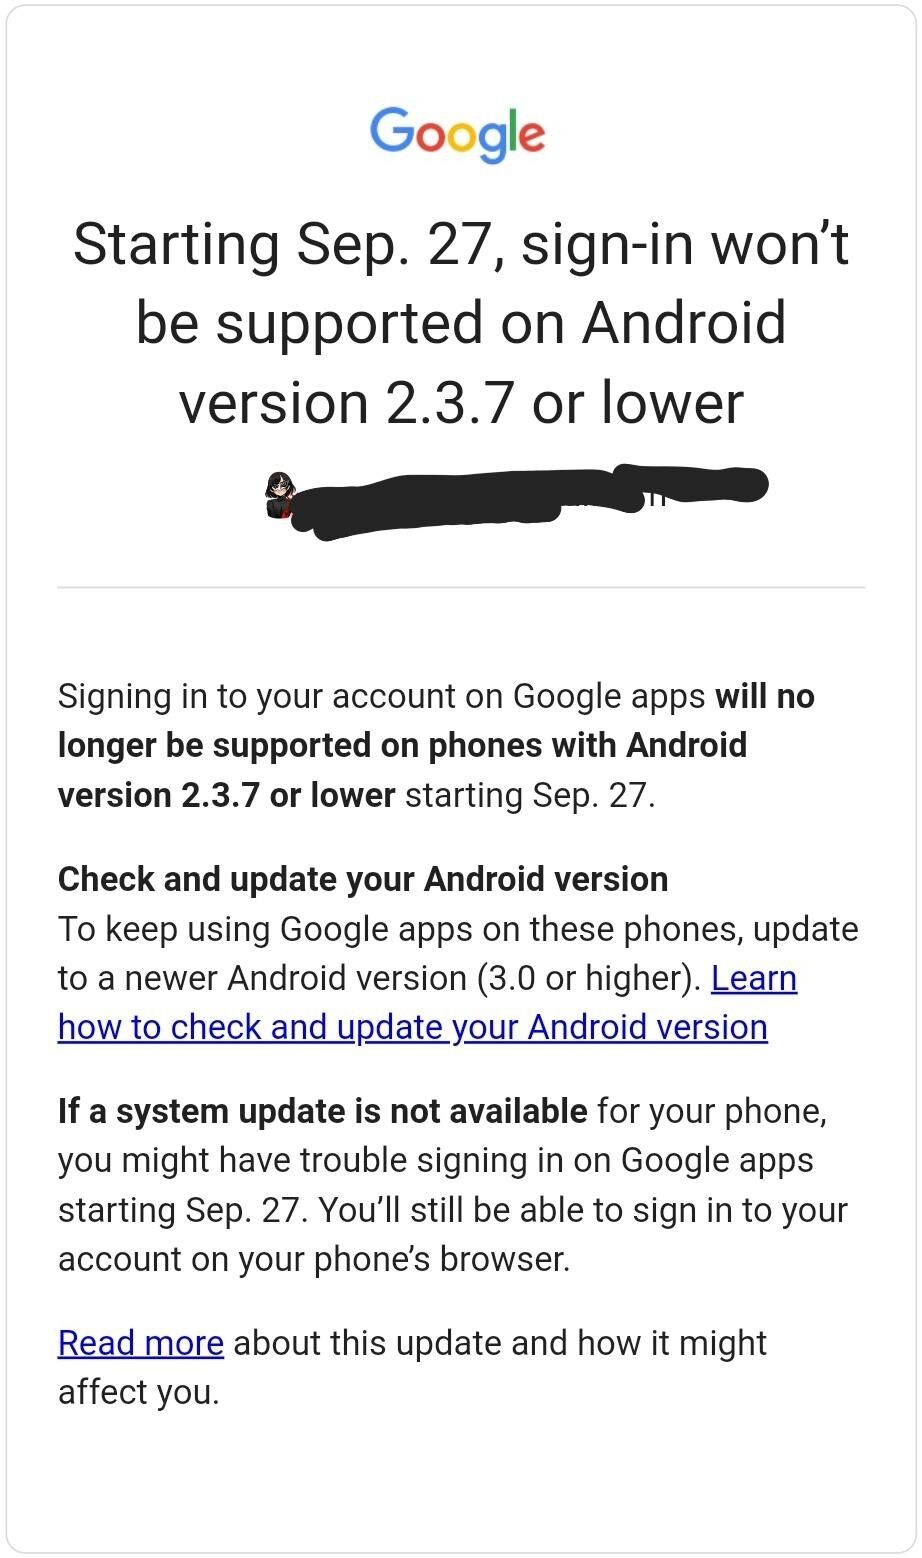 Google ngừng hỗ trợ các smartphone chạy Android 2.3.7 trở về trước